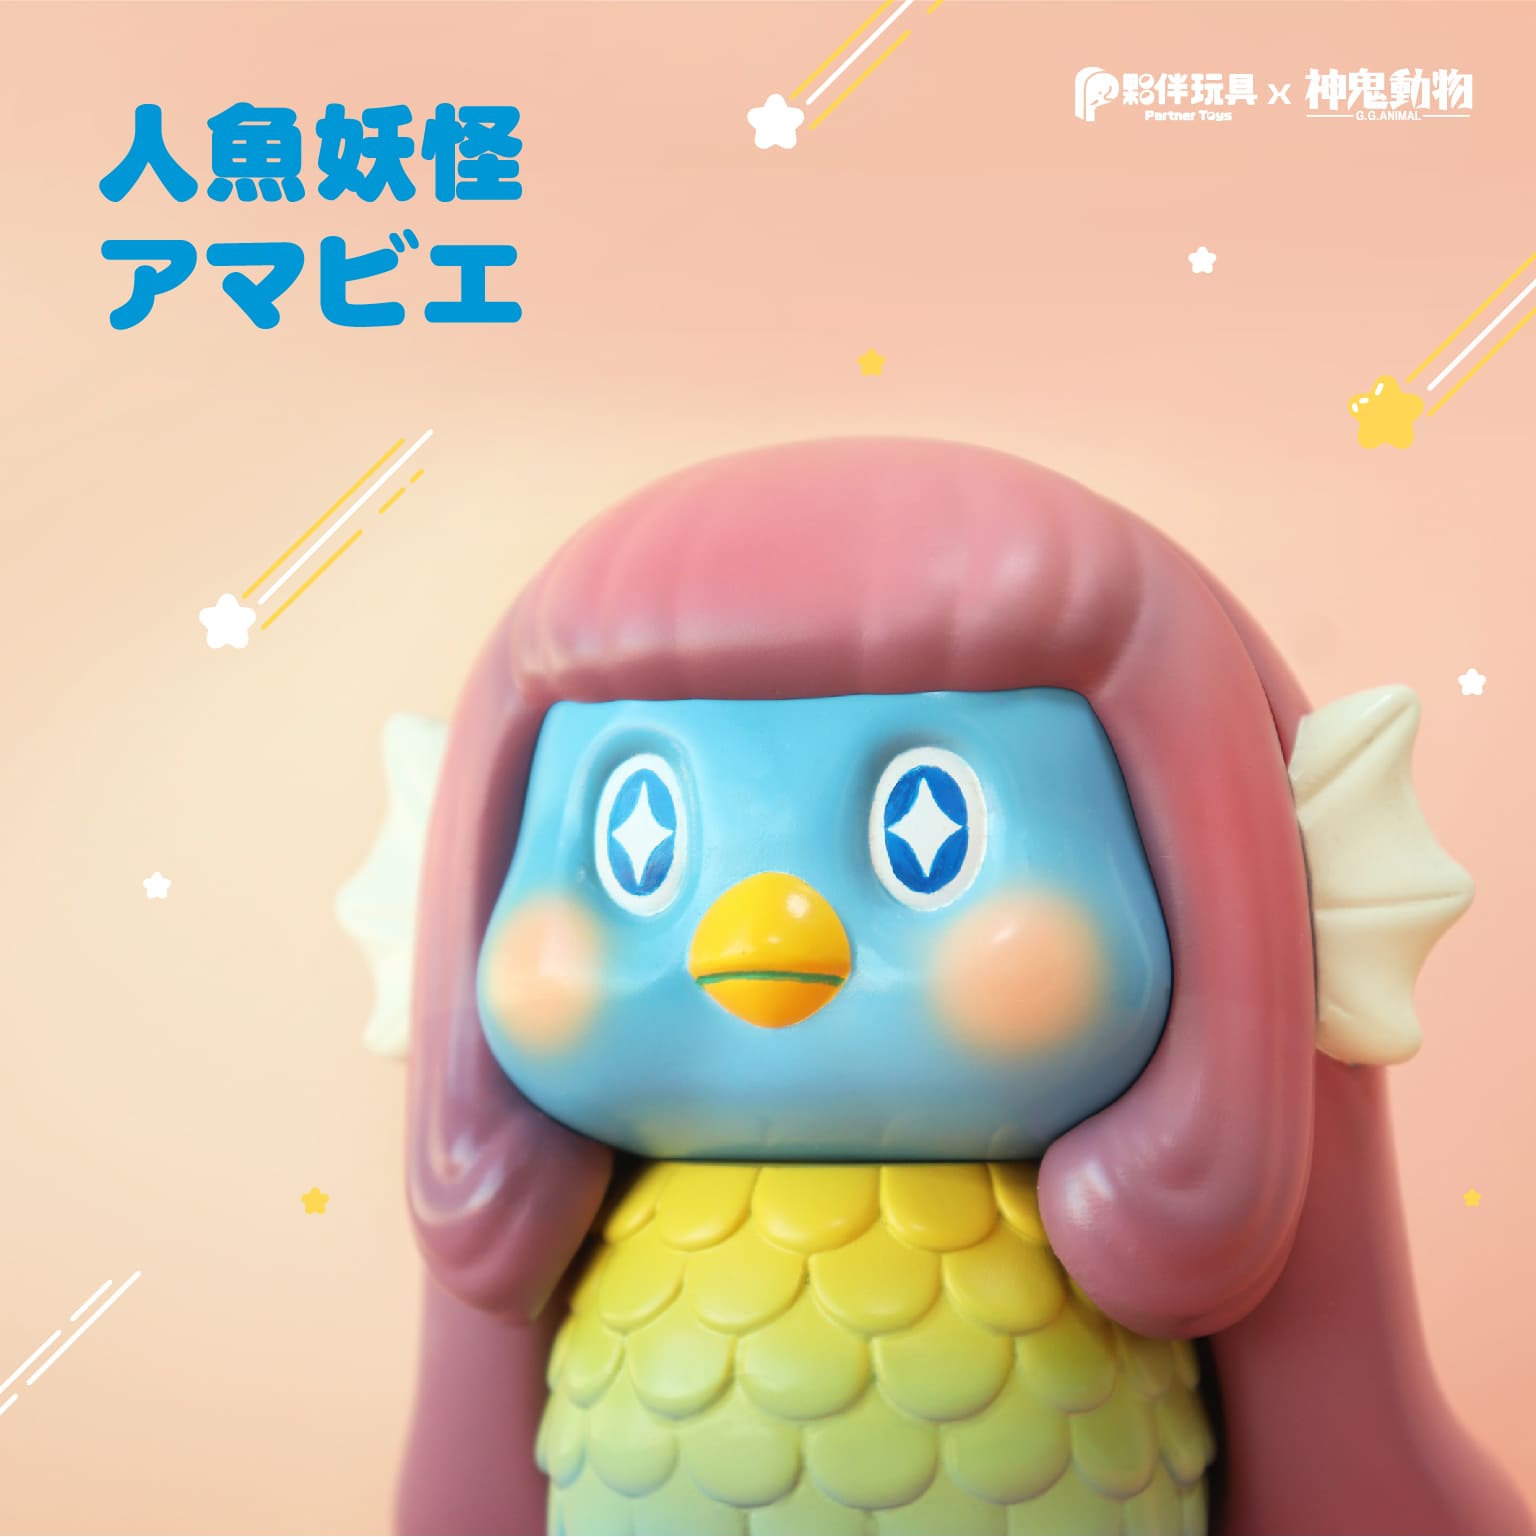 【現貨】限定品釋出「人魚妖怪」軟膠玩具